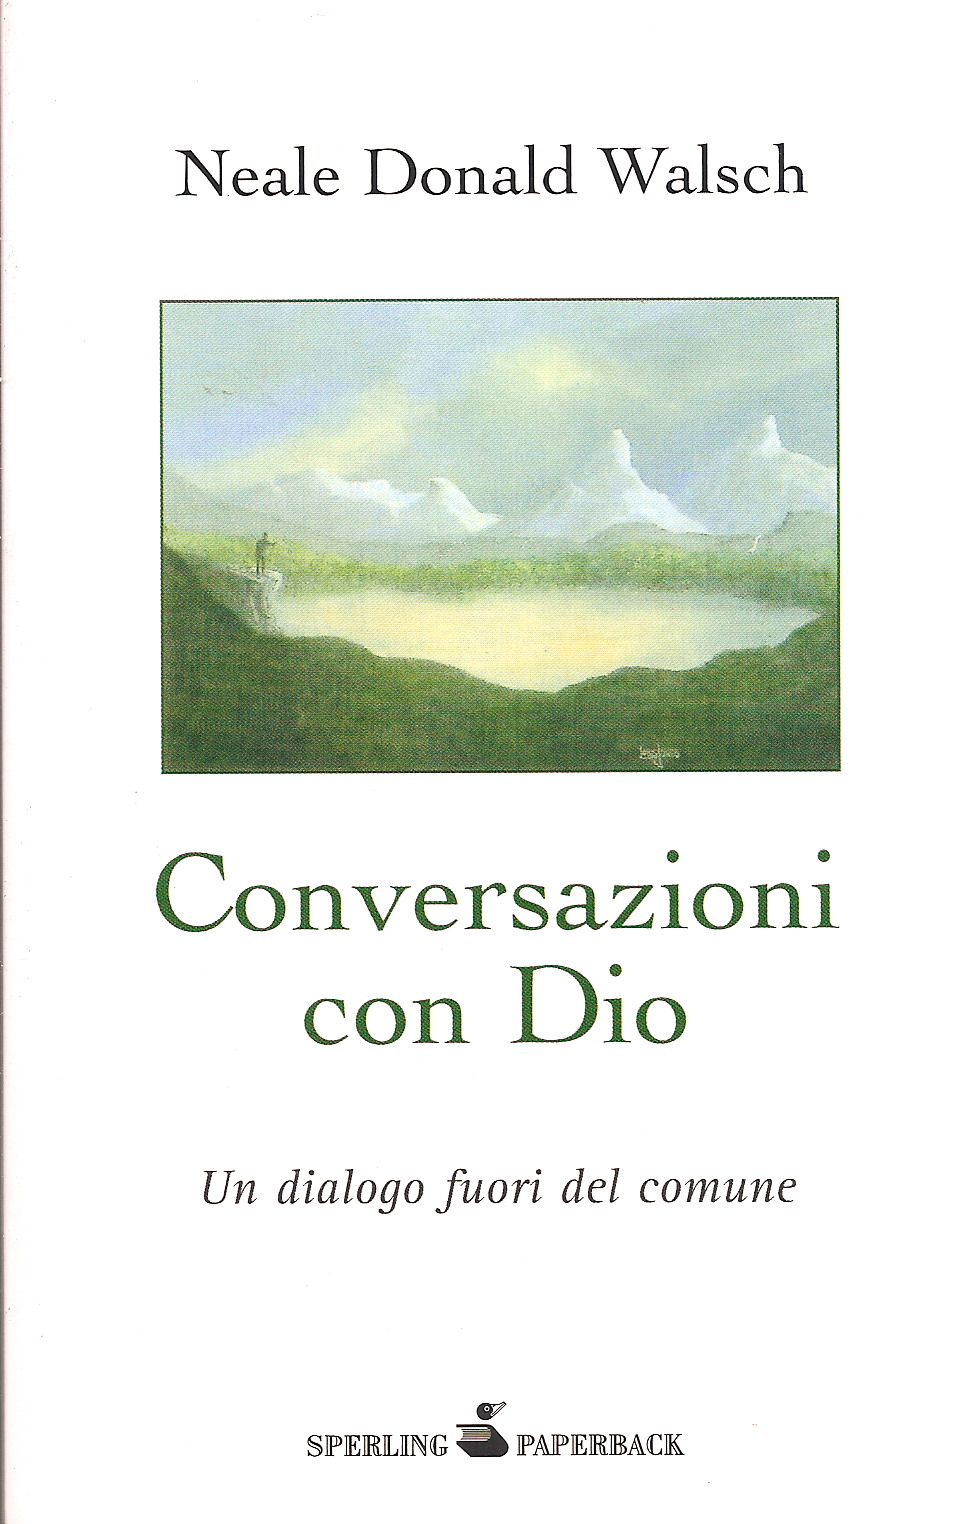 Conversazioni con Dio – Libro secondo – Neale Donald Walsch (spiritualità)